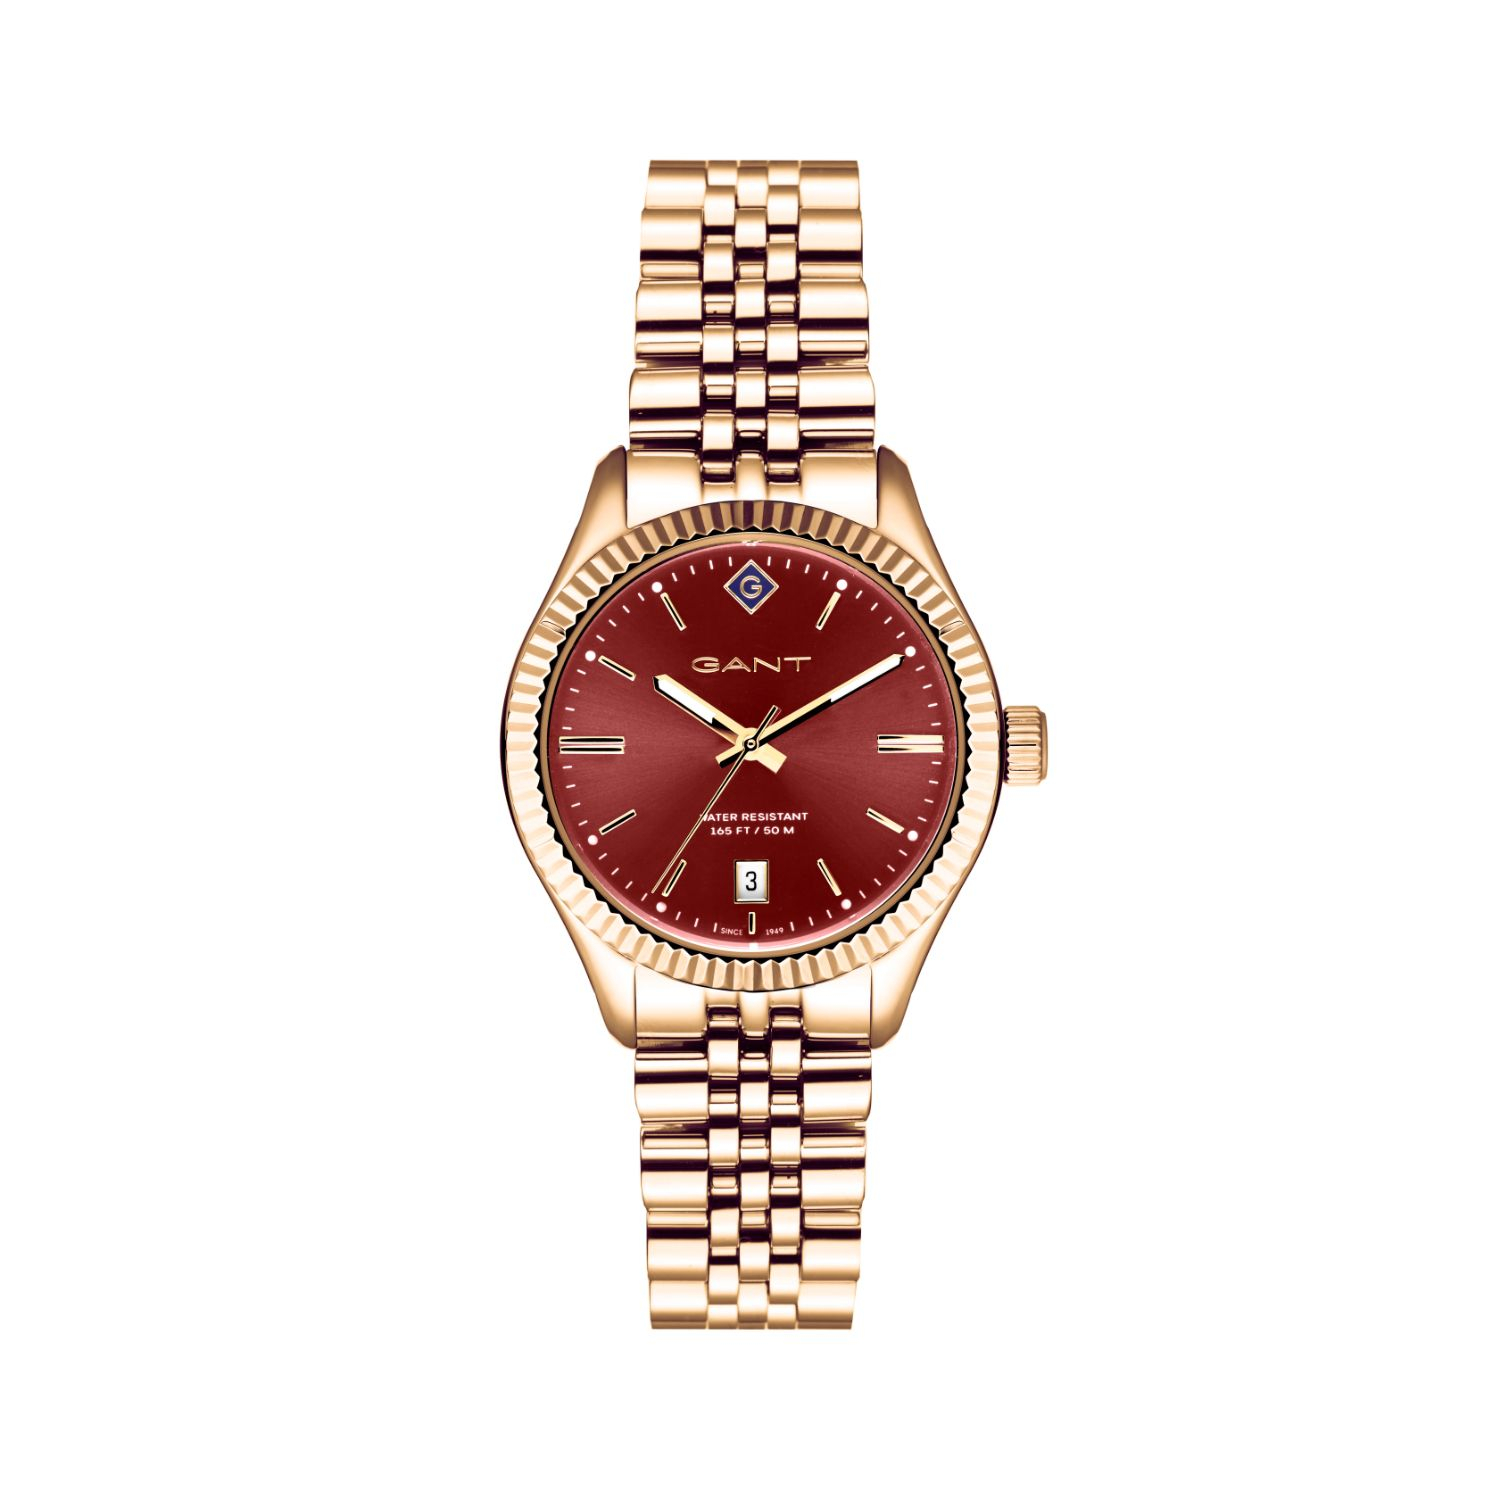 Γυναικείο ρολόι Gant από χρυσό ανοξείδωτο ατσάλι με Μπορντό καντράν και μπρασελέ.